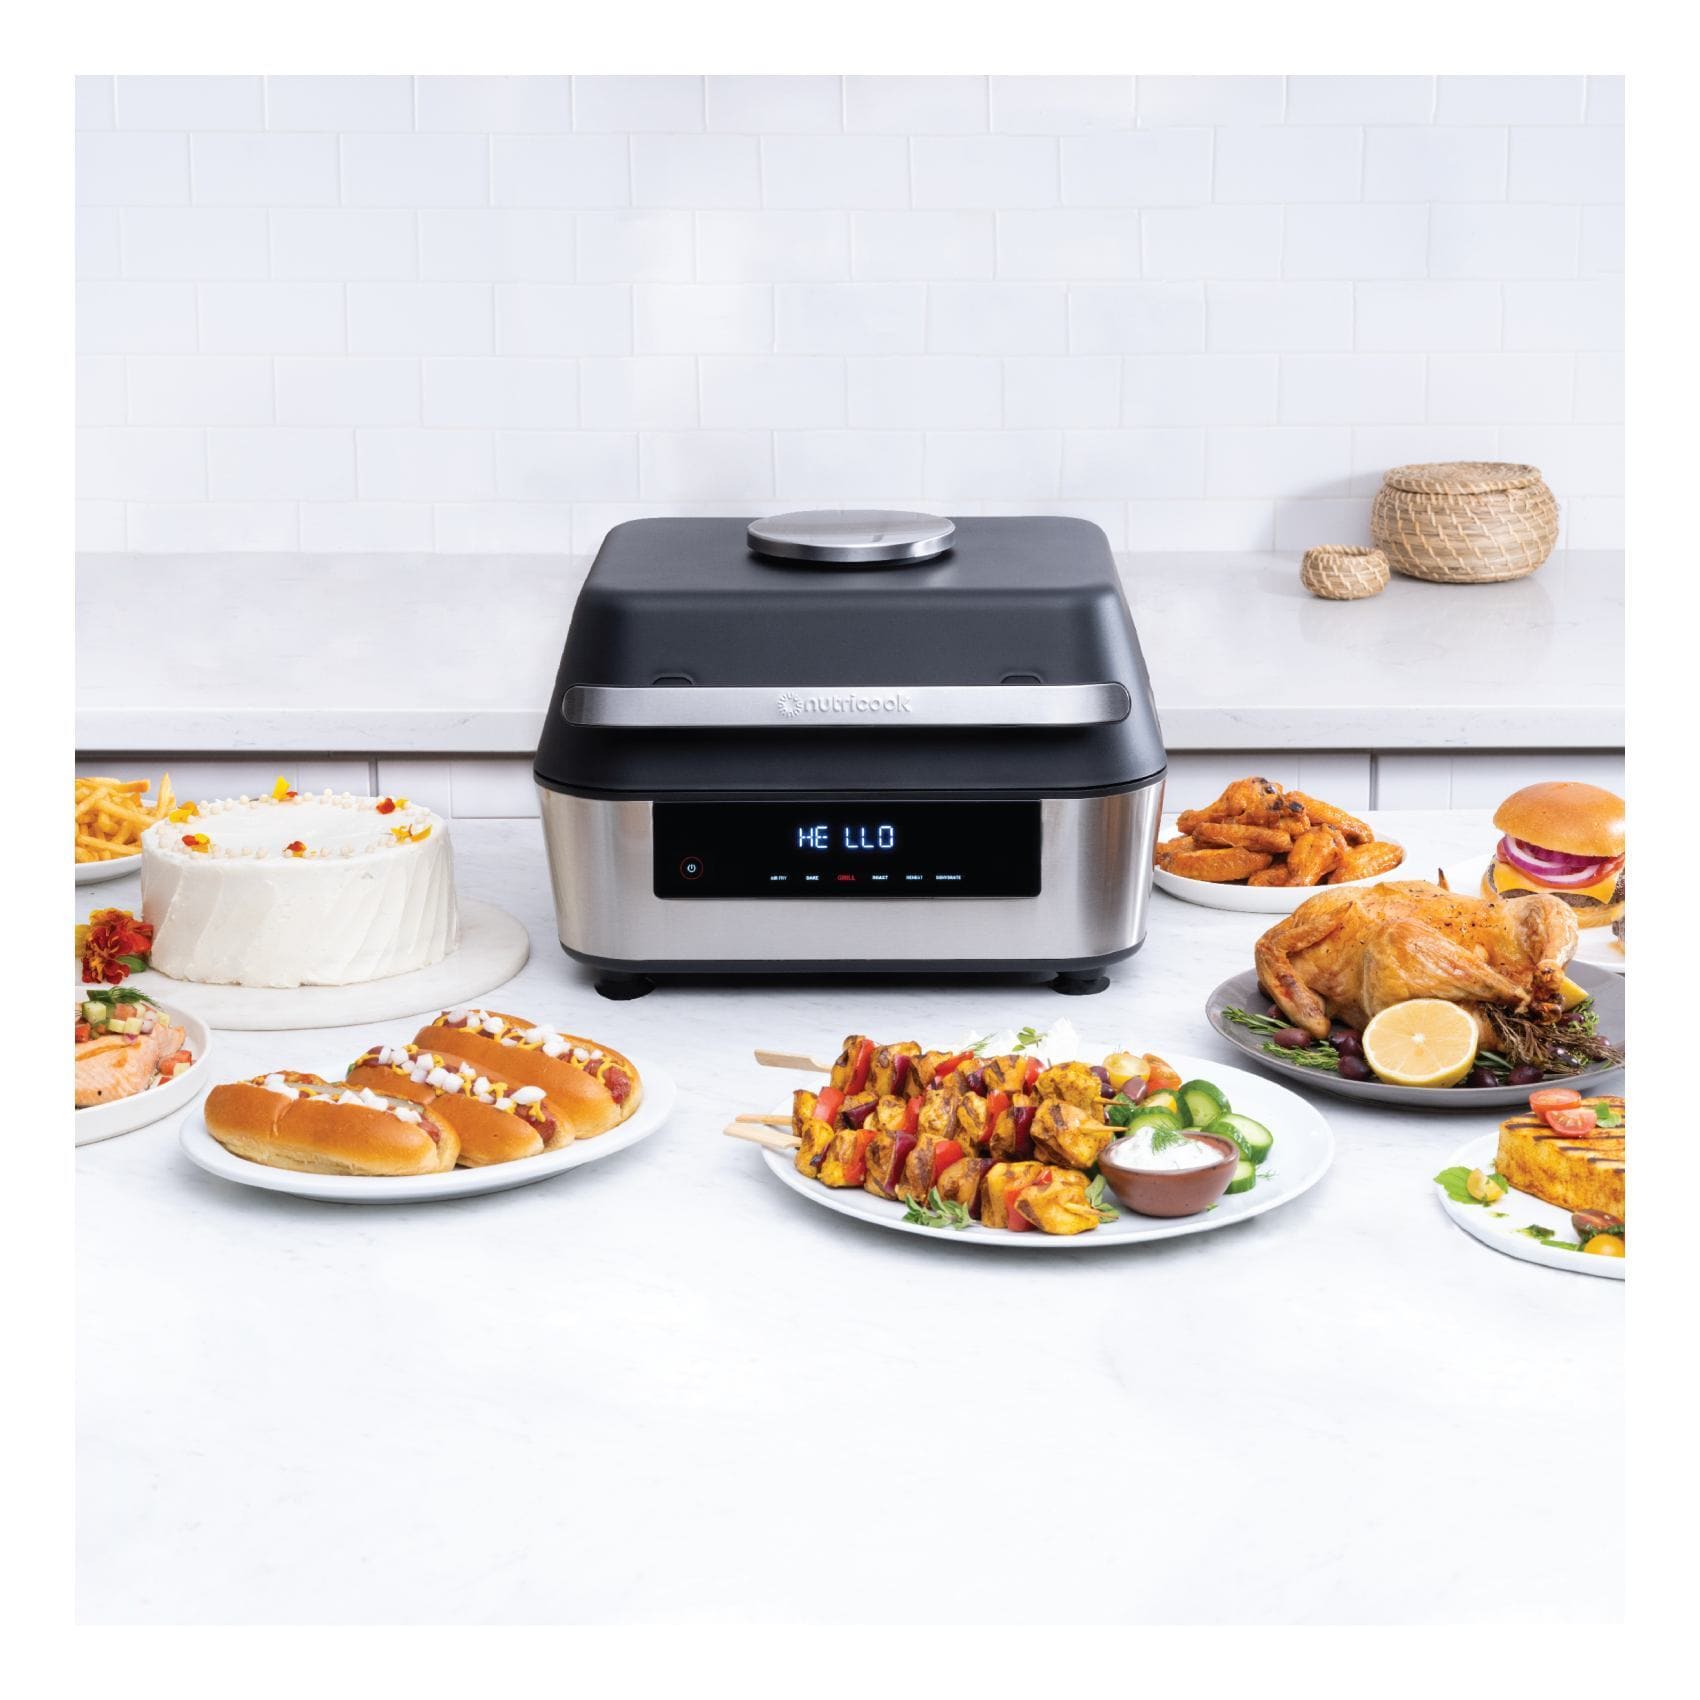 Buy Nutricook Rapid Air Fryer 2 NC-AF204 Multicolour 1500W Online - Shop  Electronics & Appliances on Carrefour UAE